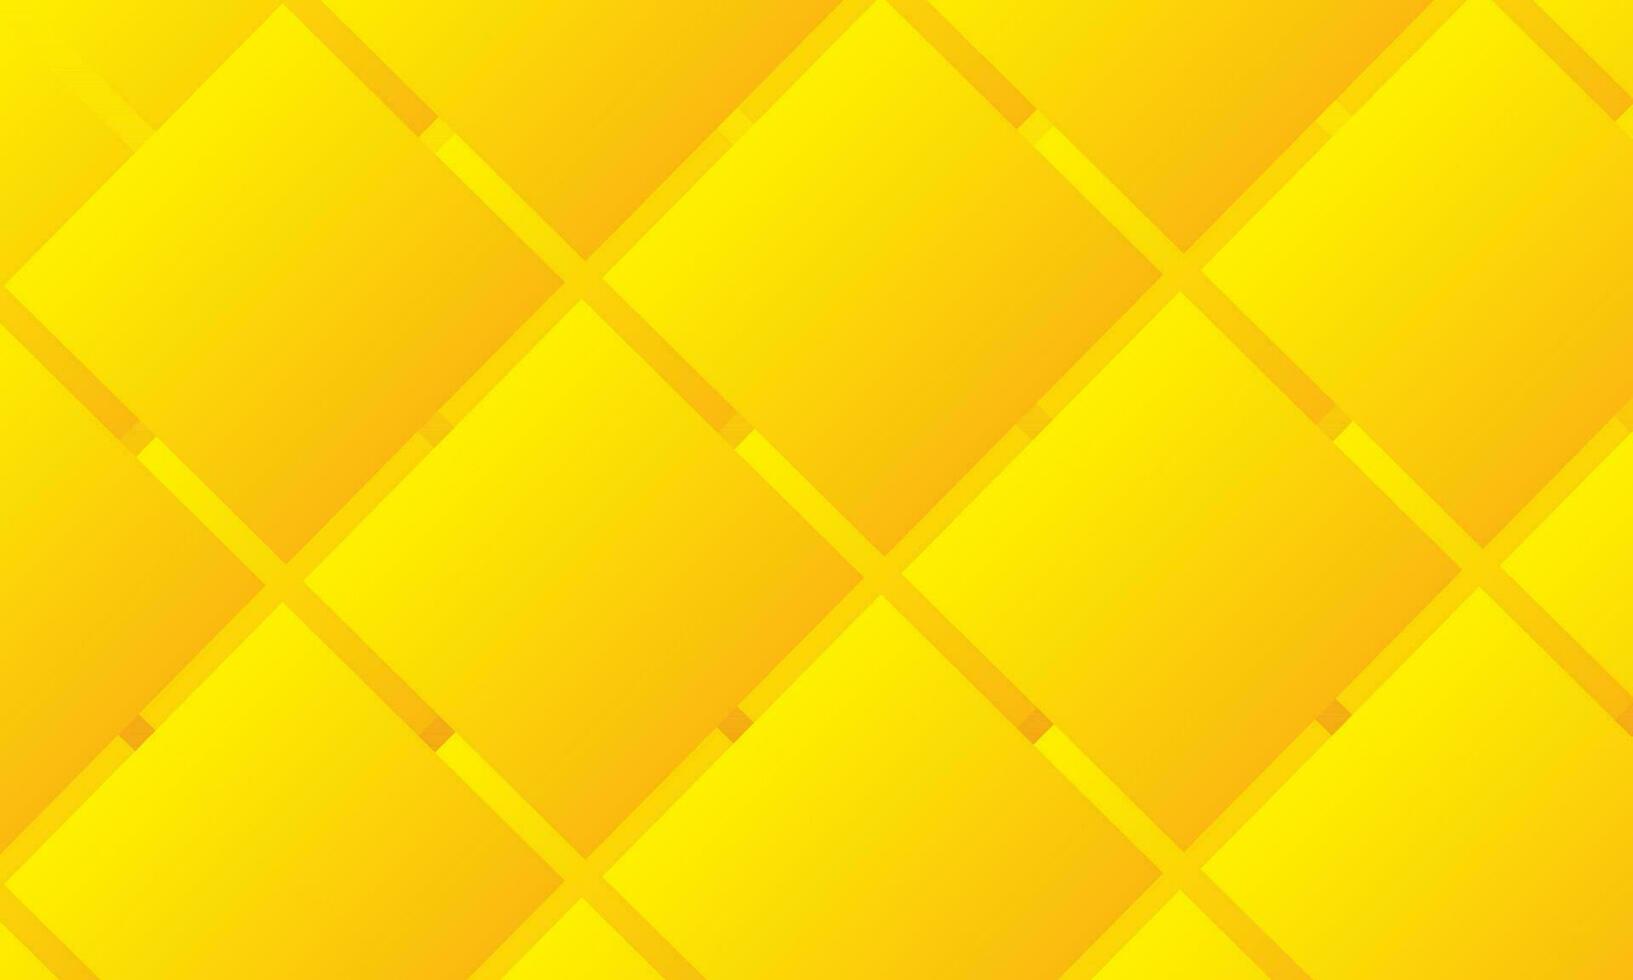 sfondo giallo moderno astratto vettore